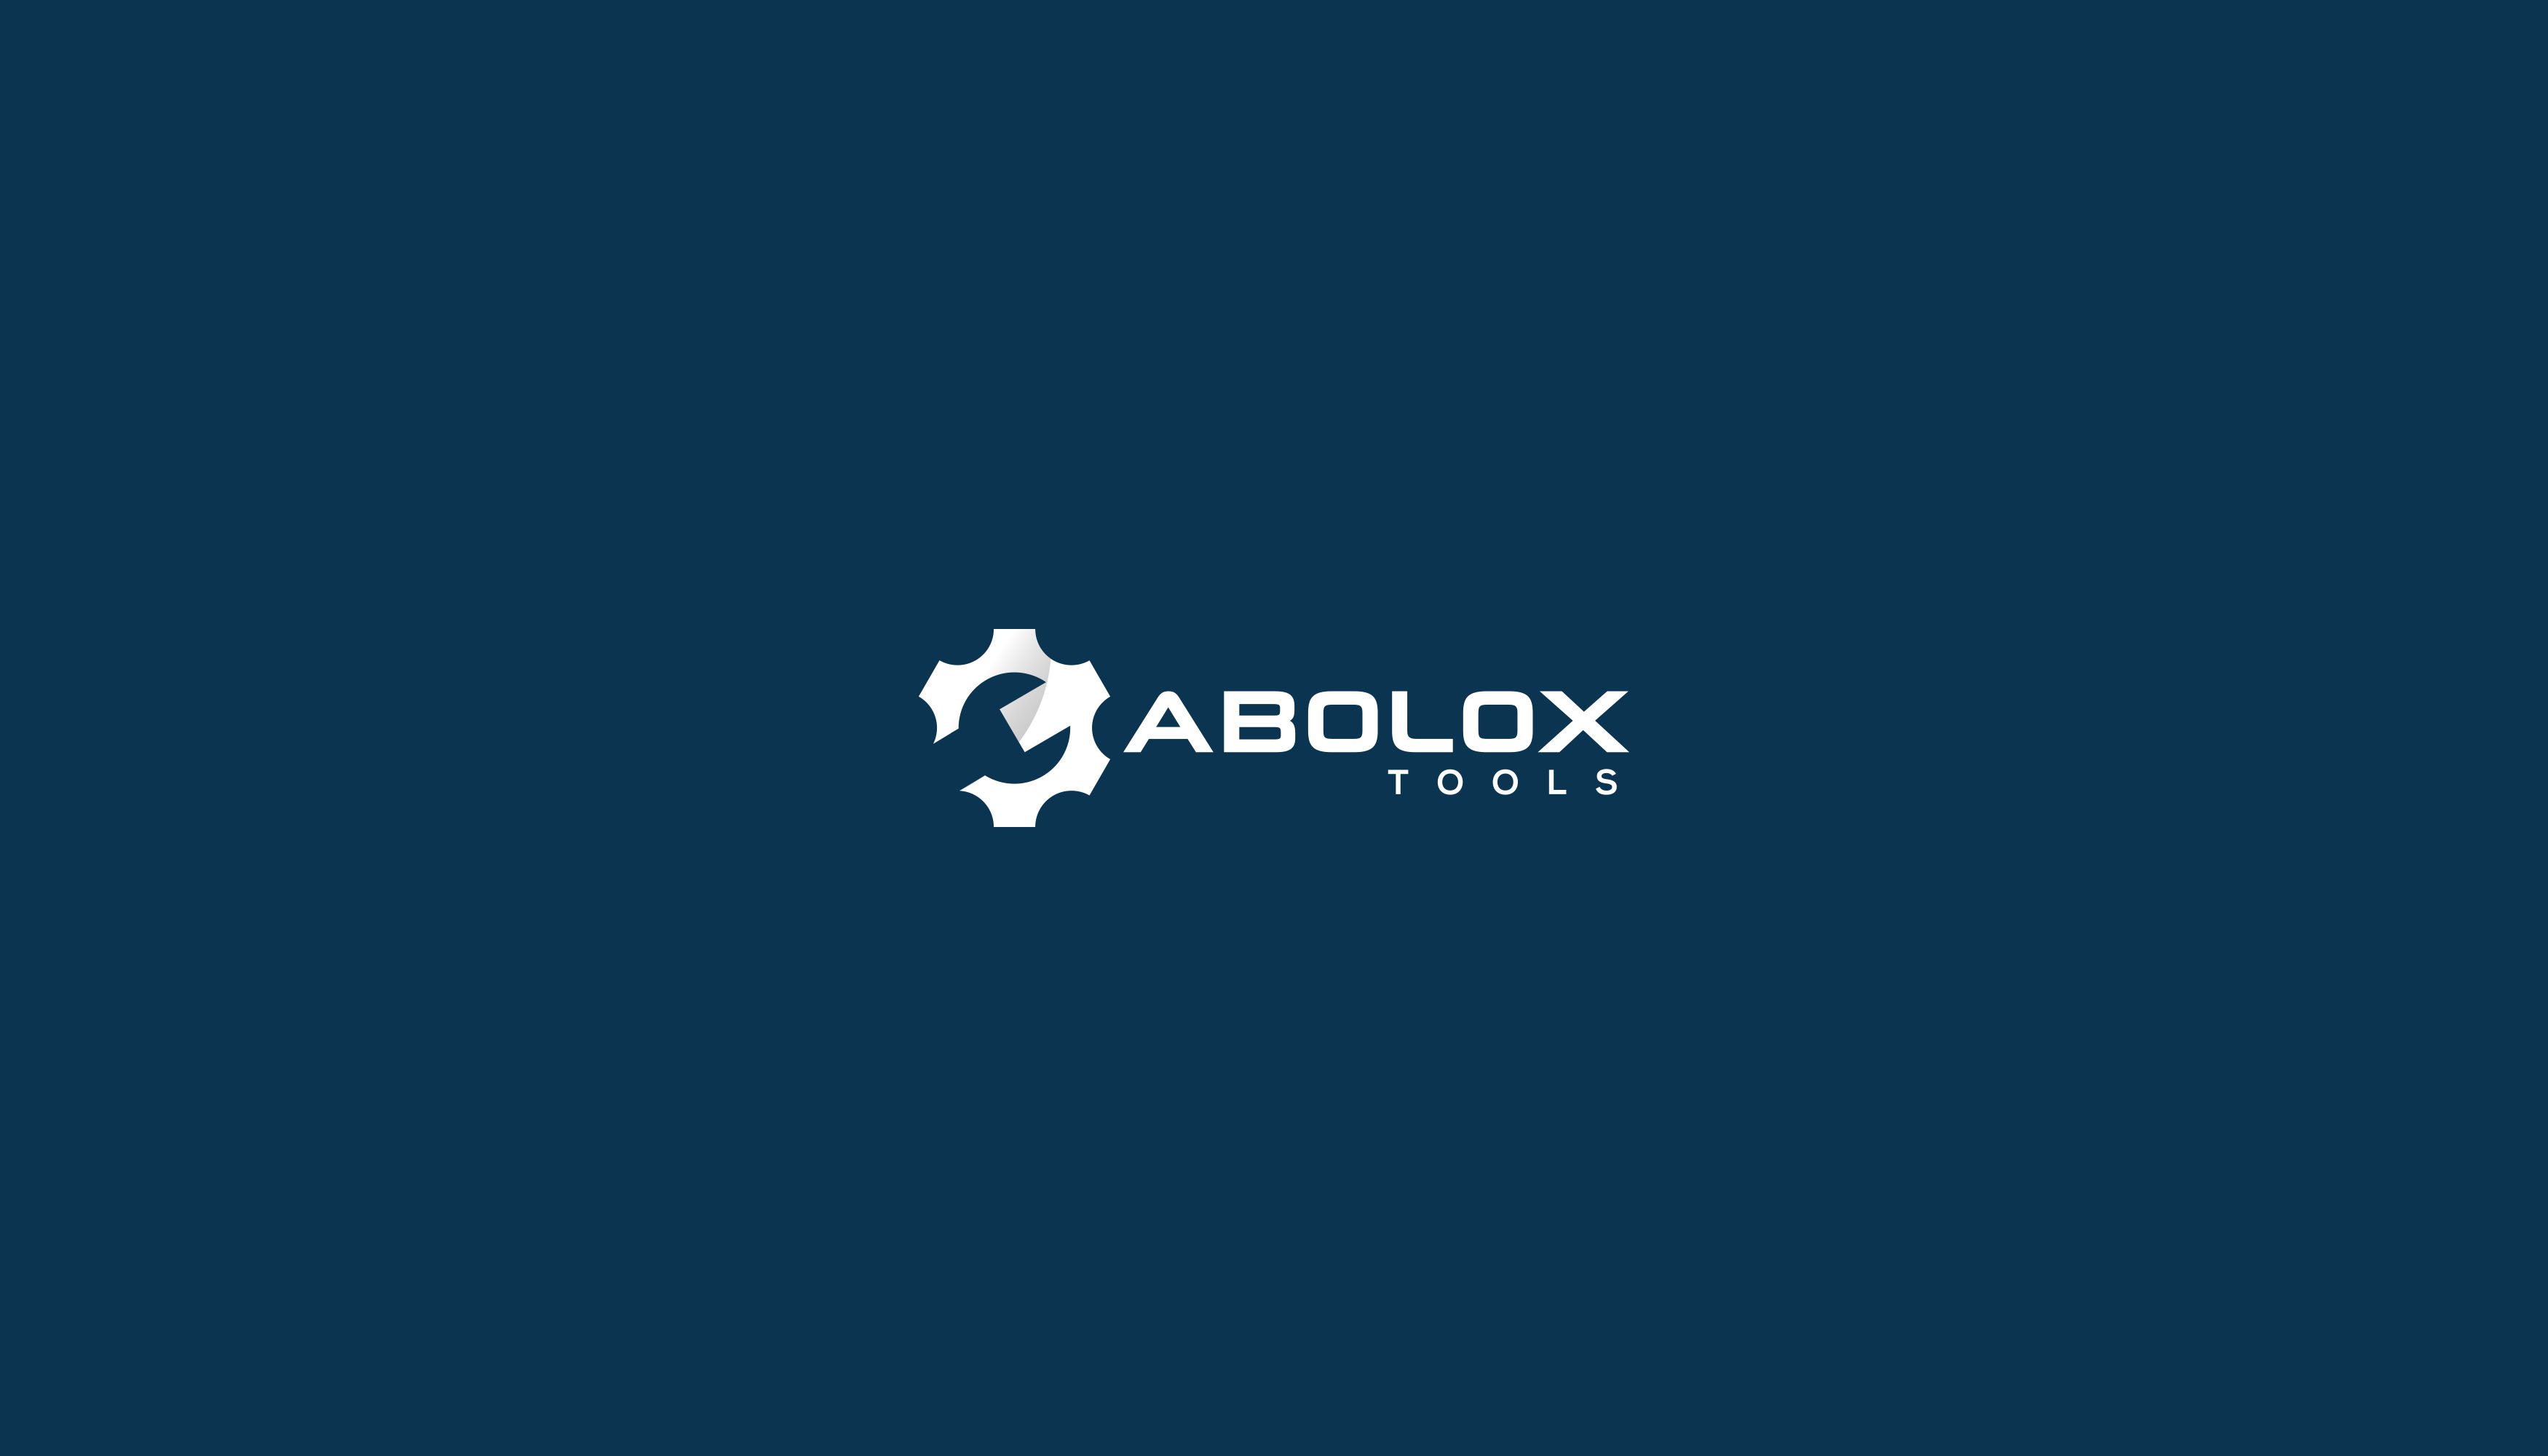 Abolox Tools Design #6